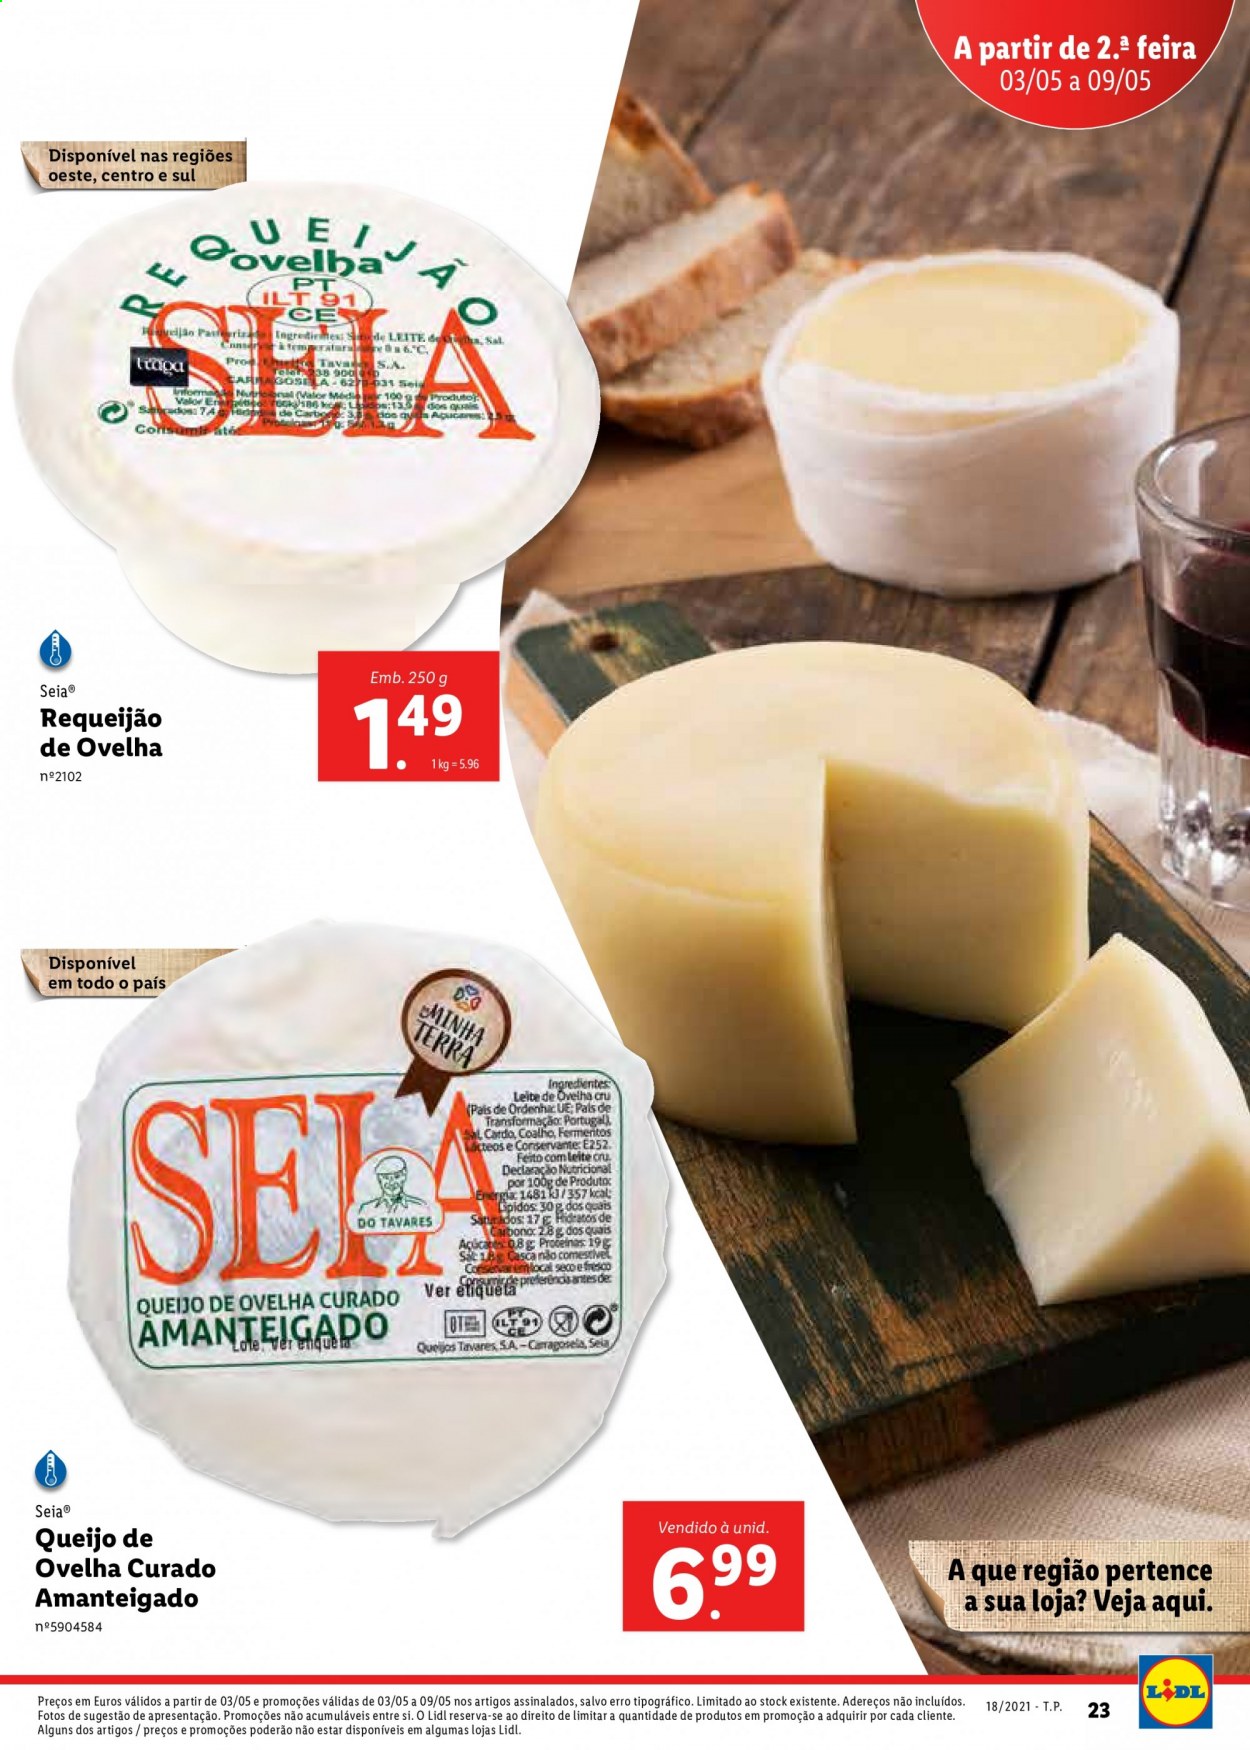 thumbnail - Folheto Lidl - 3.5.2021 - 9.5.2021 - Produtos em promoção - queijo, requeijão. Página 43.